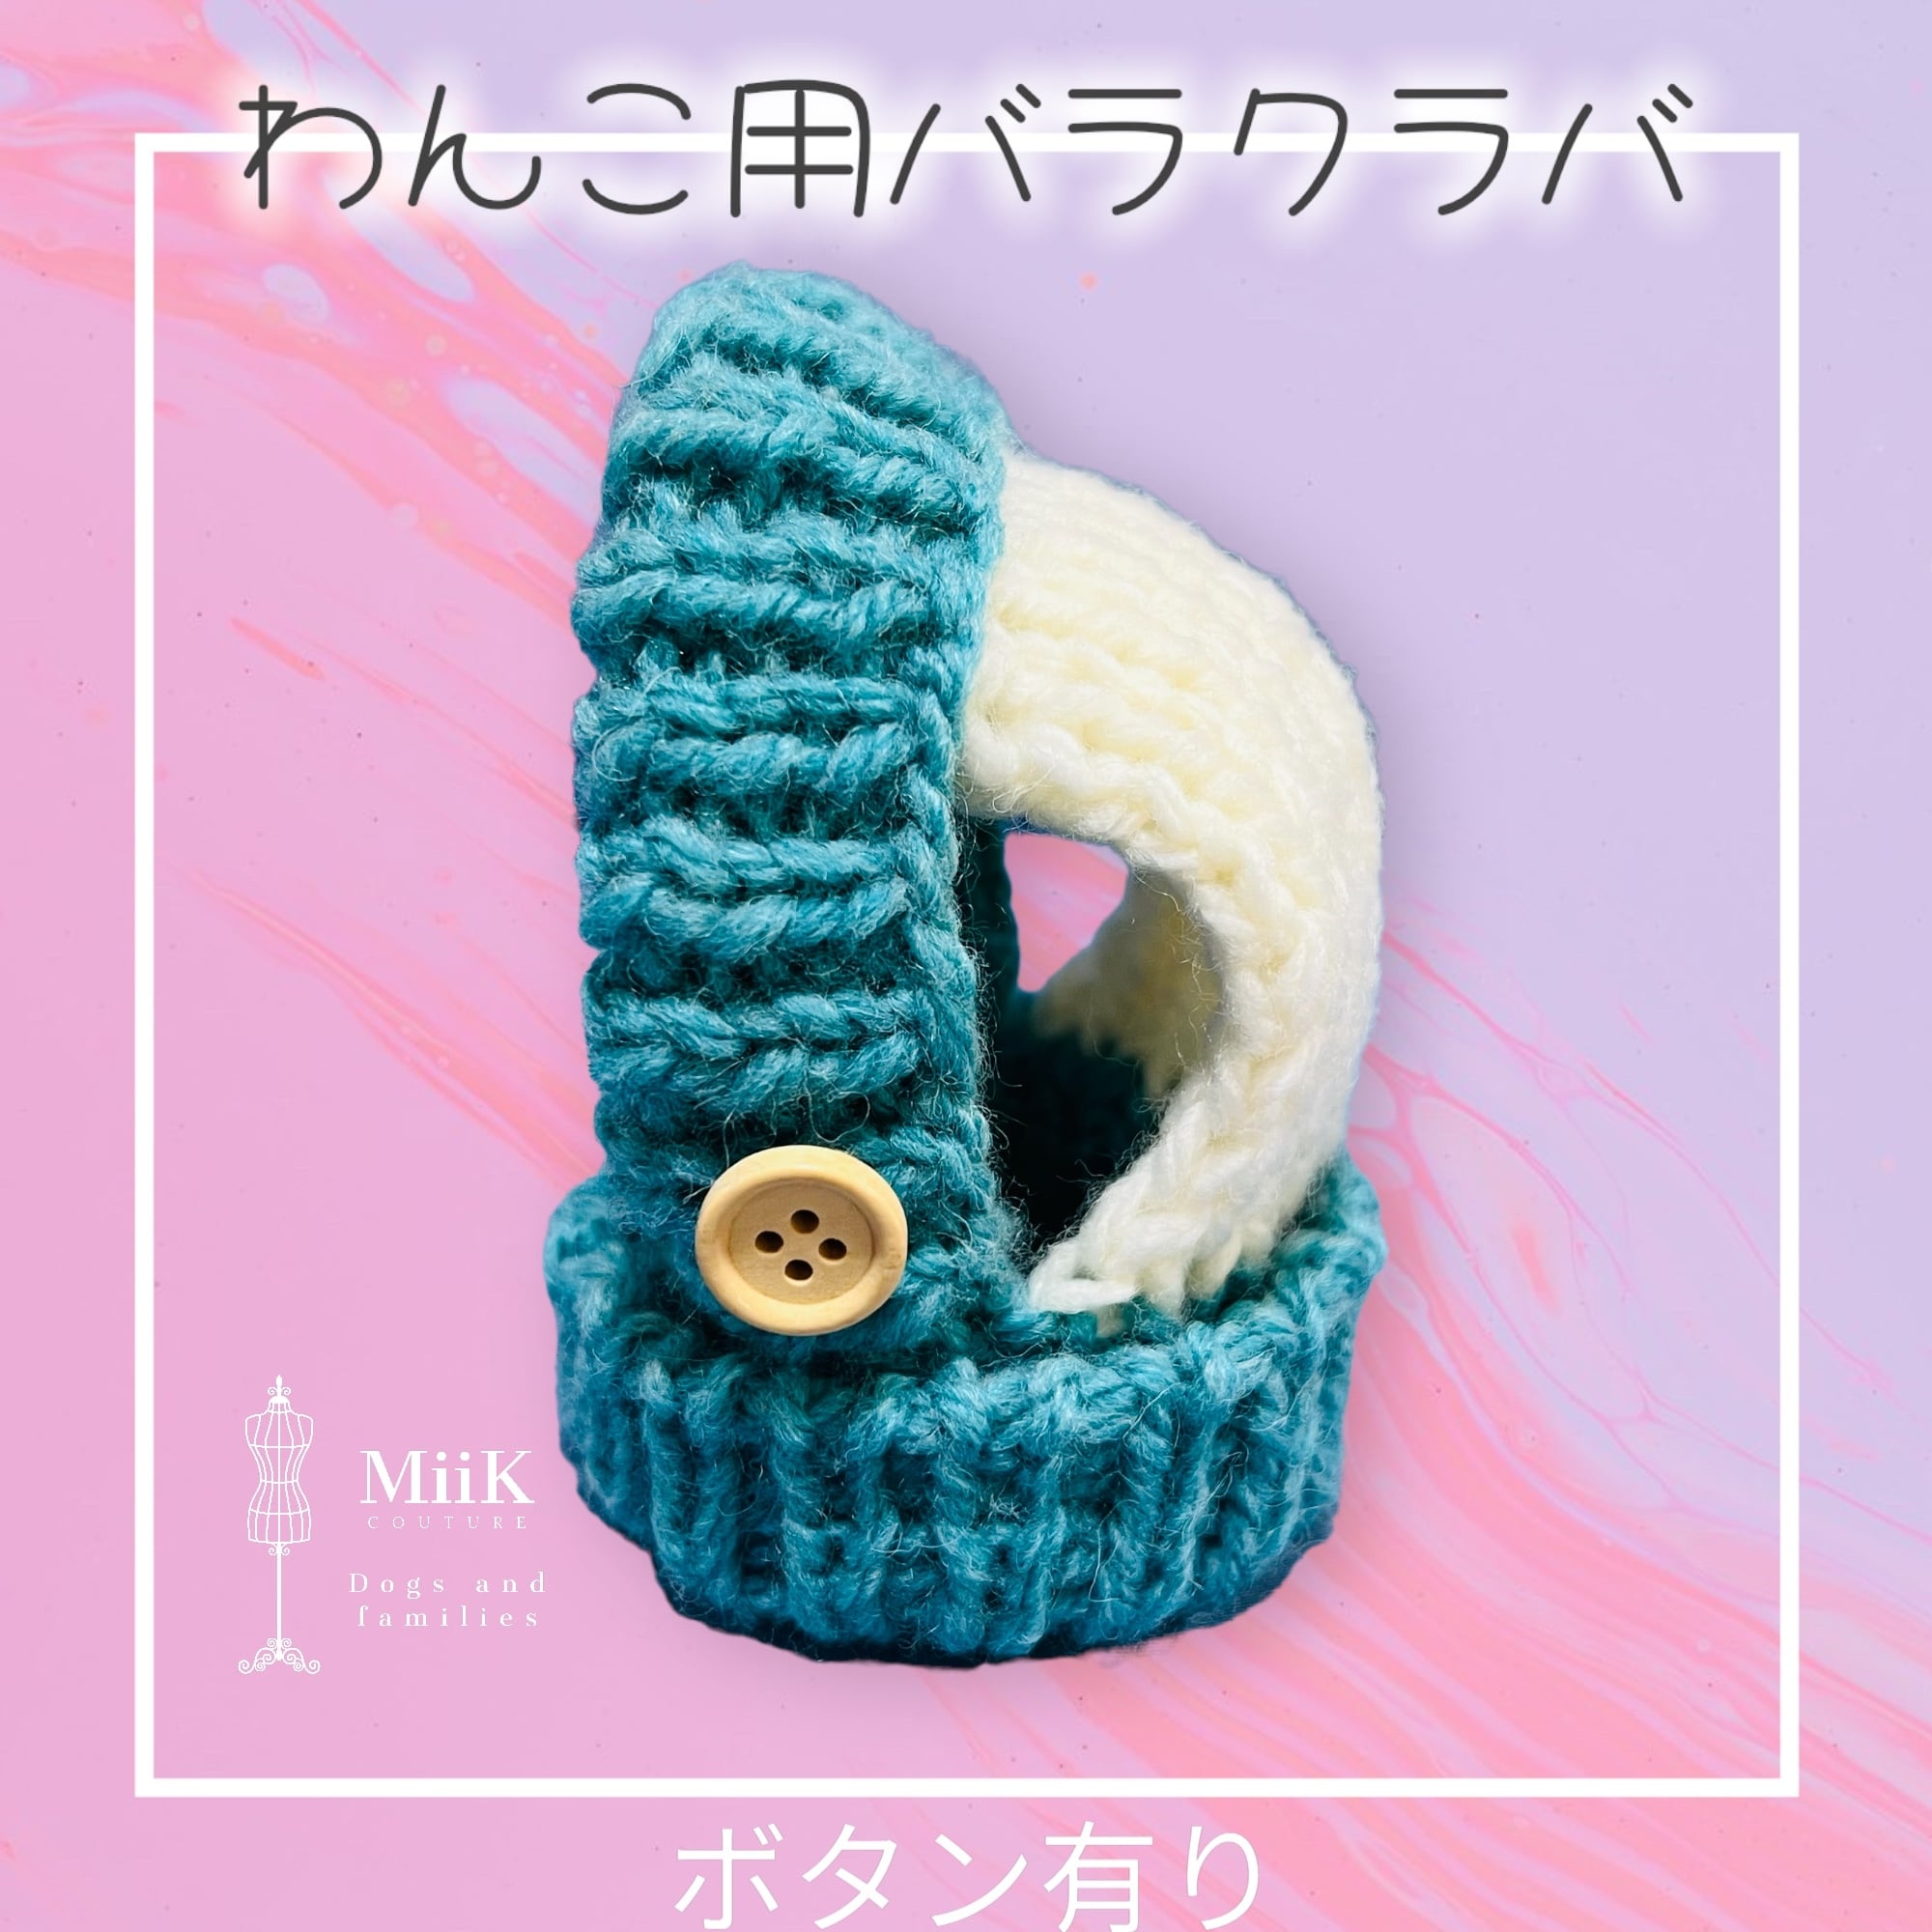 【オーダーy様】MiiK オリジナル わんこバラクラバ 犬帽子 dog わんこ 防寒